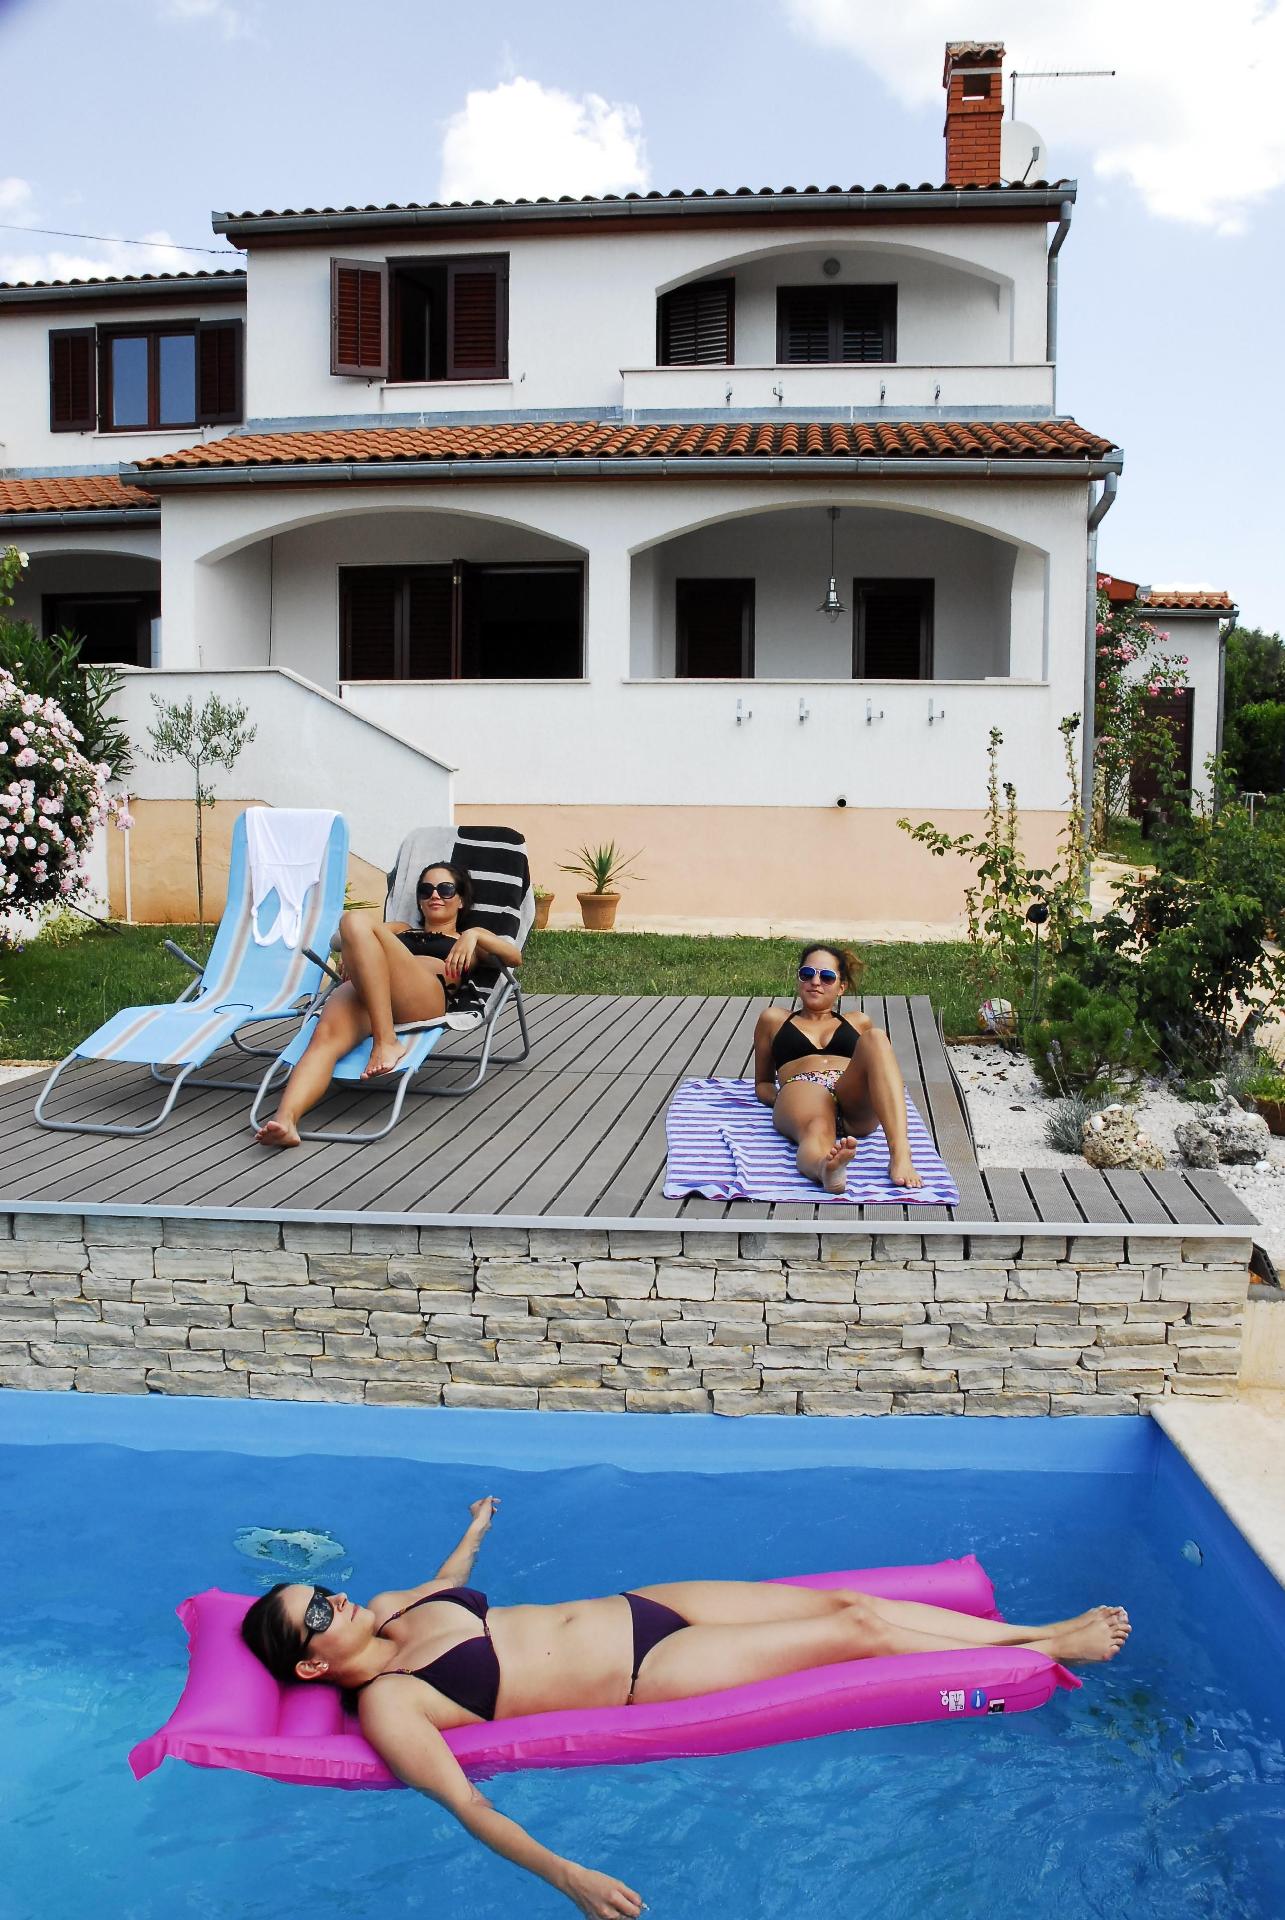 Ferienhaus mit Balkon, überdachter Terrasse u Ferienhaus in Kroatien